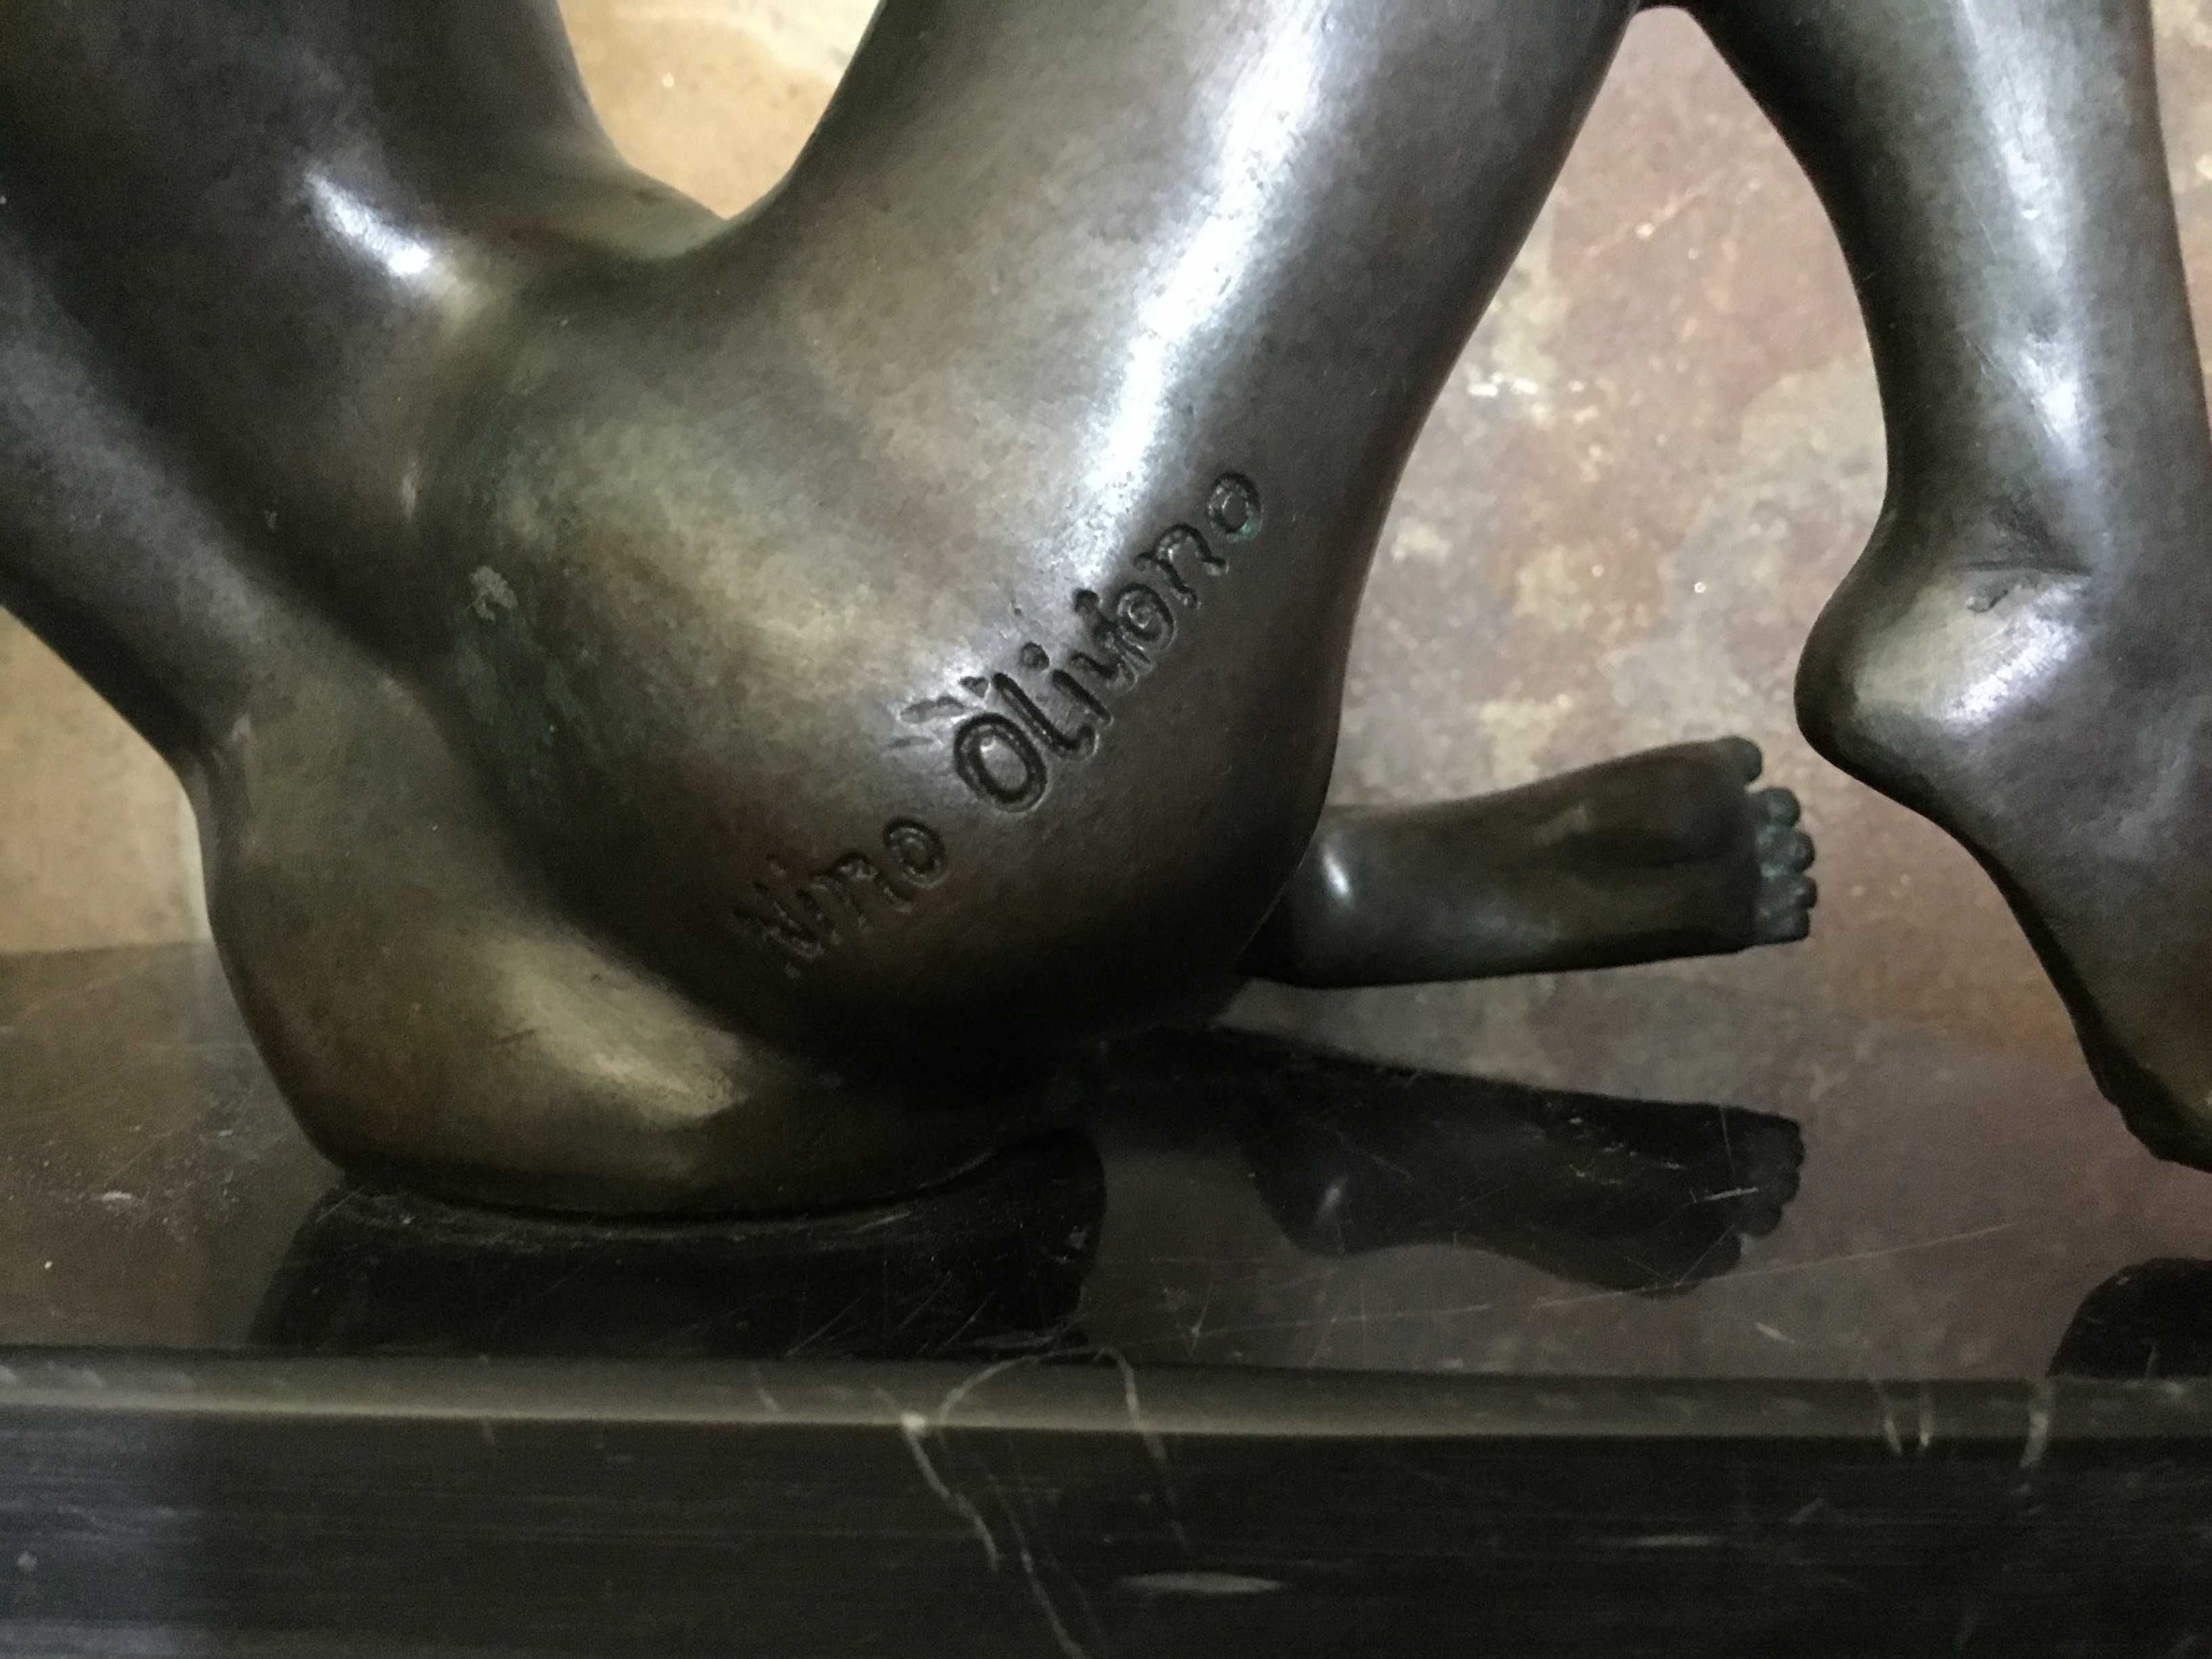 Большая Антикварная статуэтка девушка обнаженная эротика ню Бронза